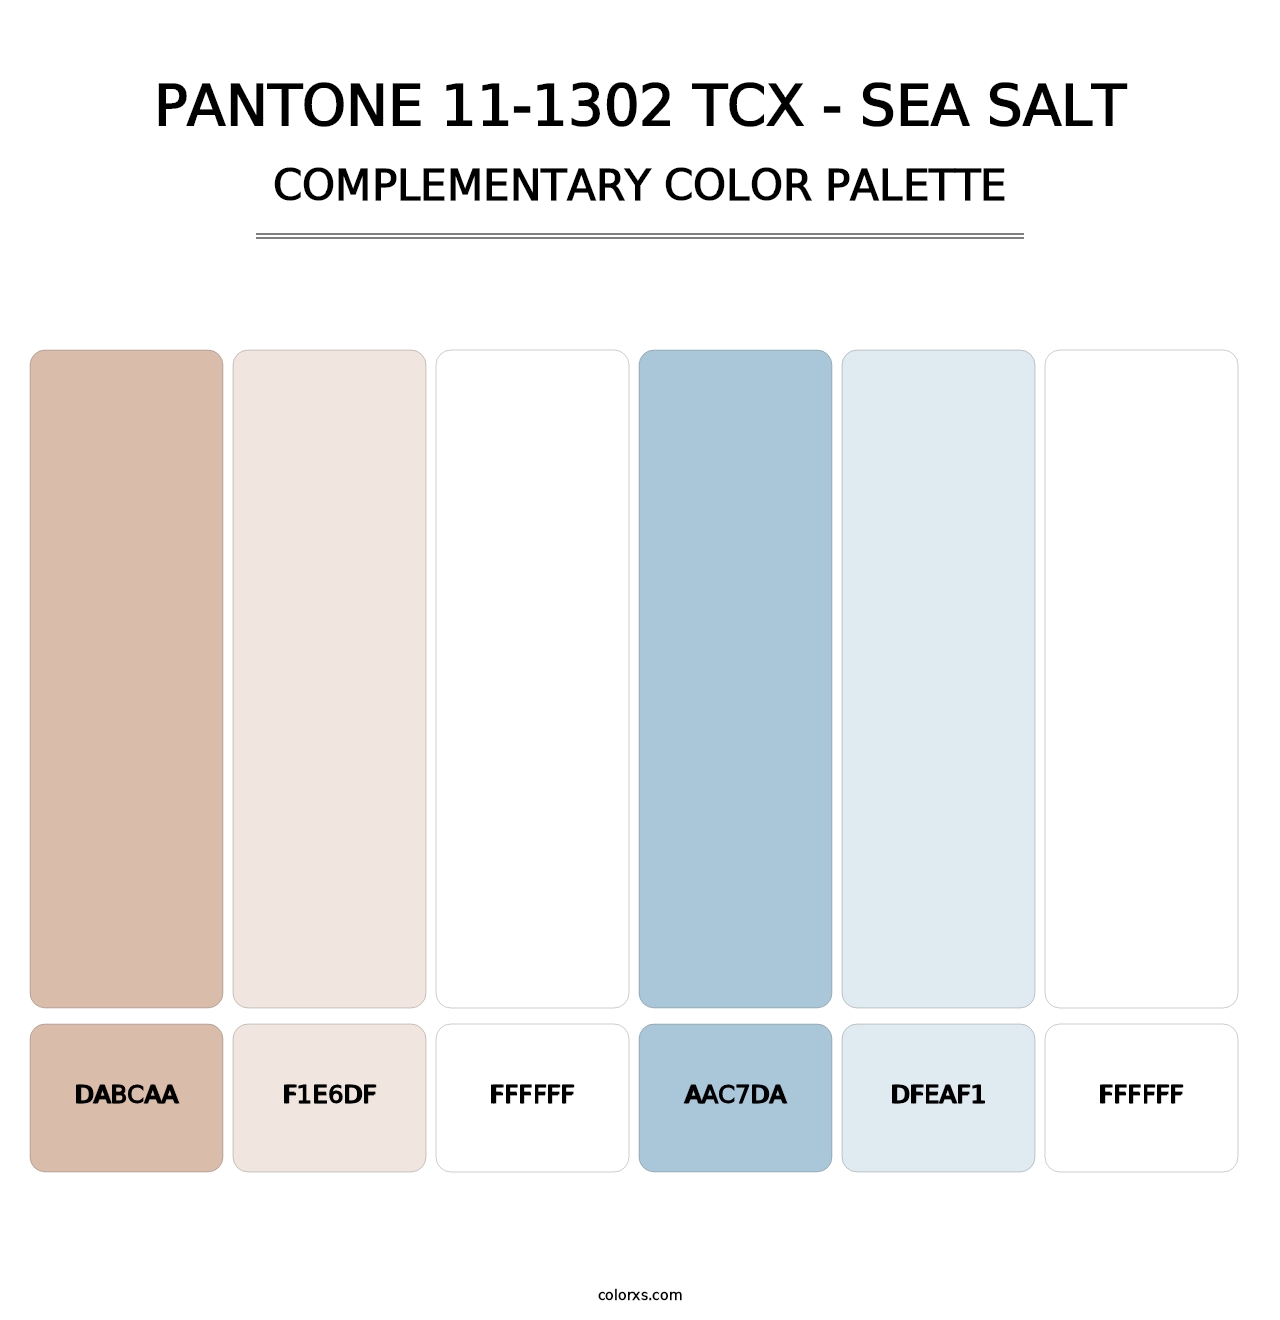 PANTONE 11-1302 TCX - Sea Salt - Complementary Color Palette